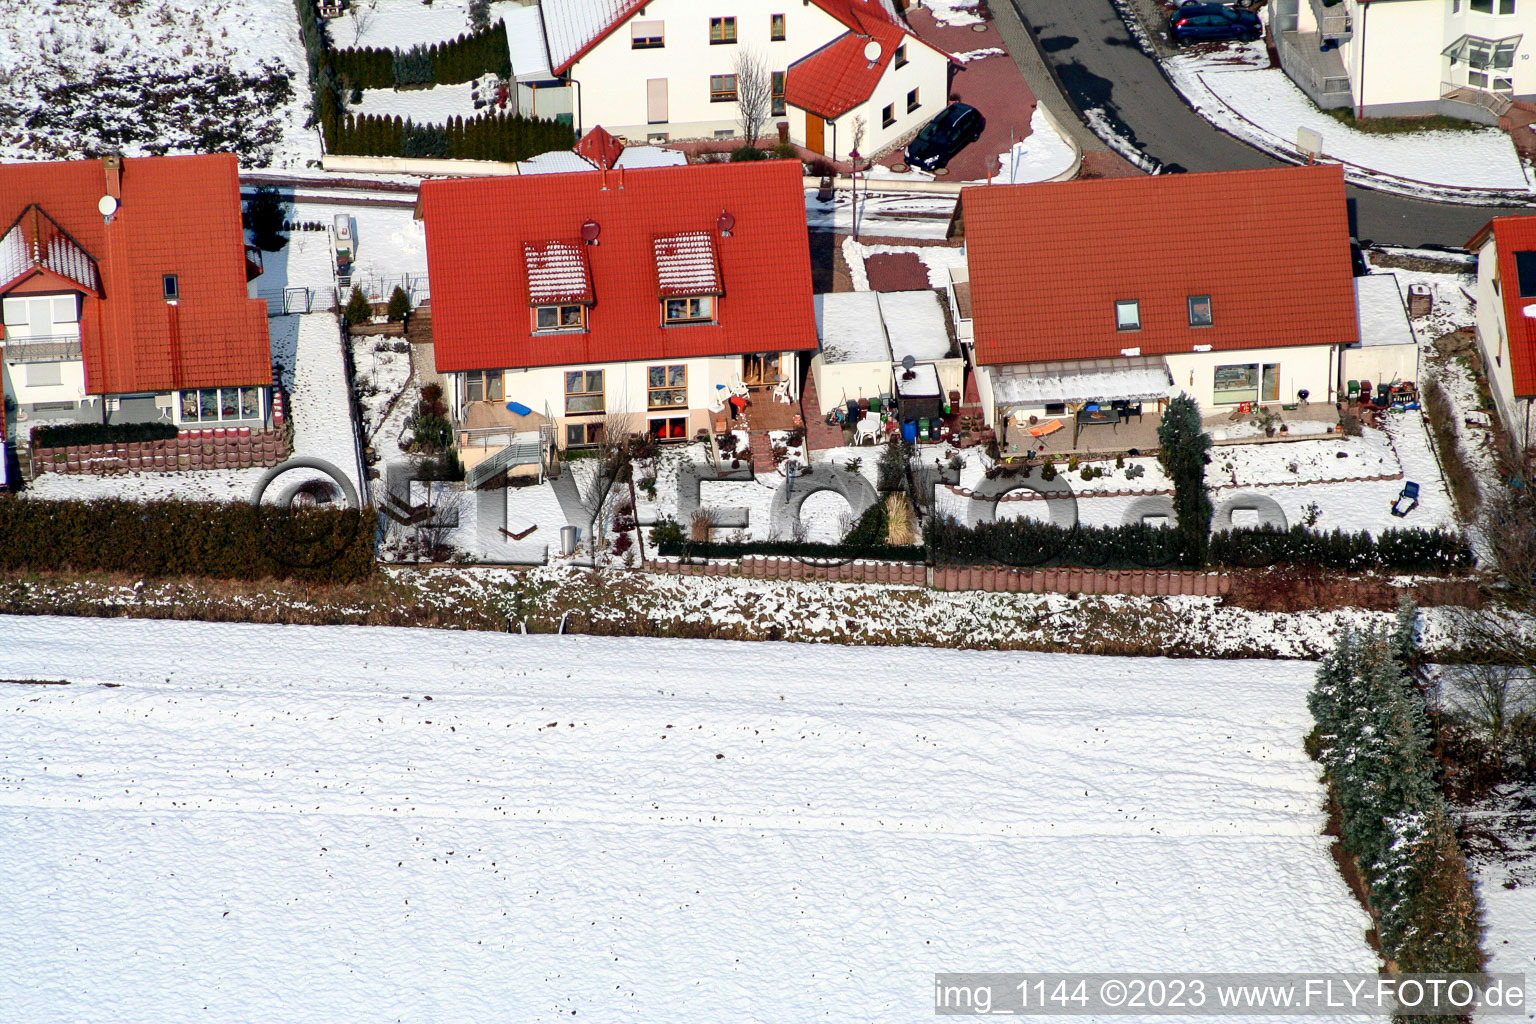 Vue aérienne de Dans la neige à Freckenfeld dans le département Rhénanie-Palatinat, Allemagne